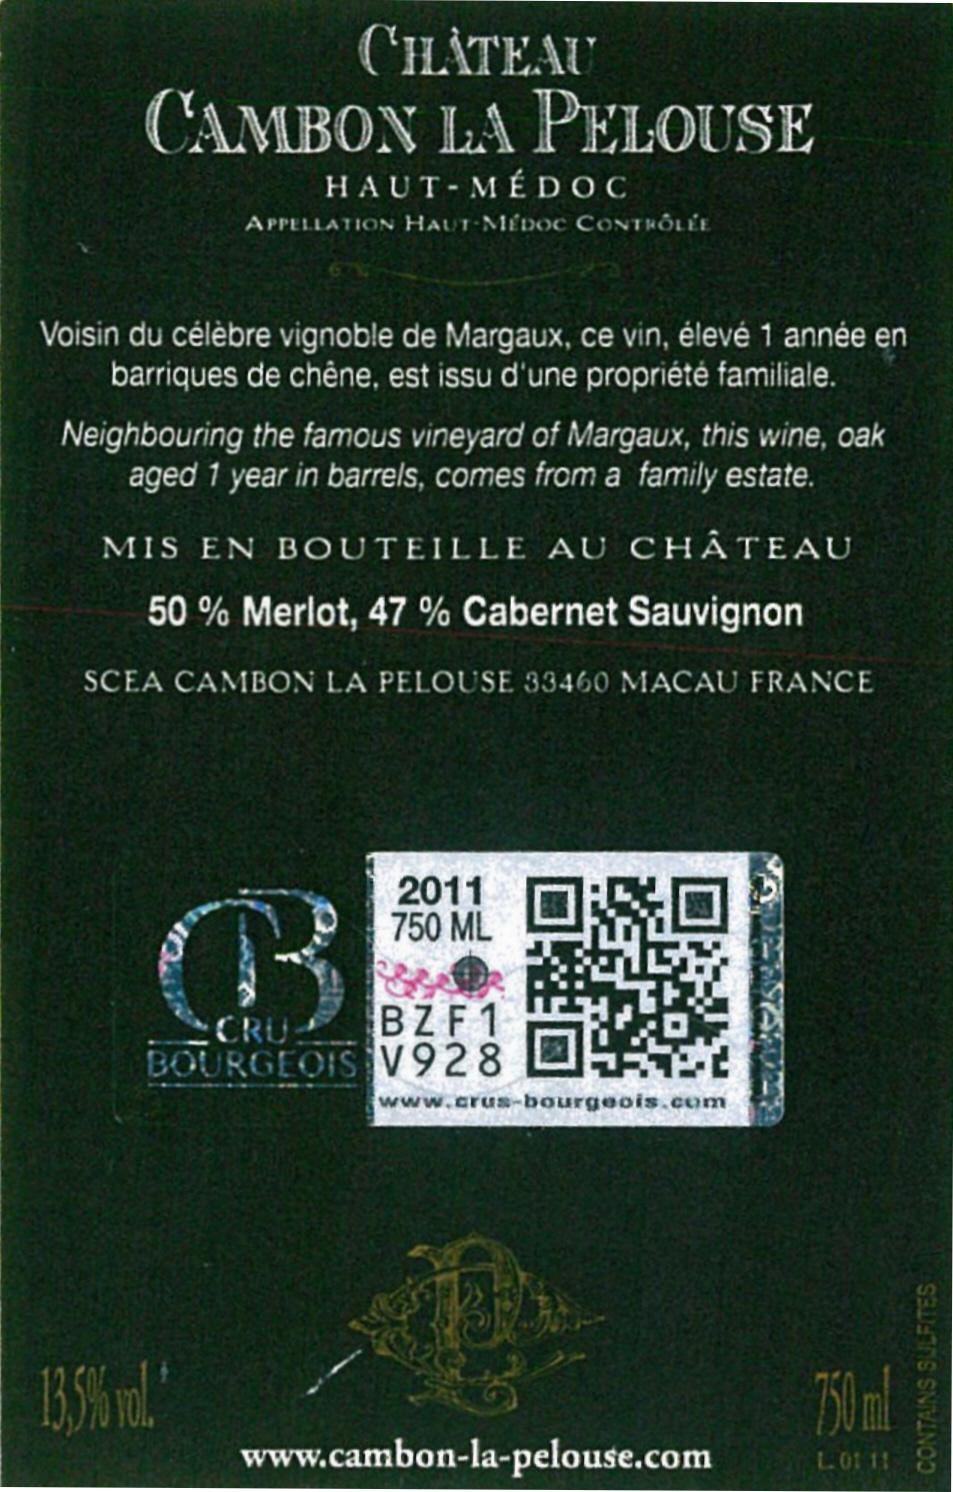 Château Cambon la Pelouse（坎波拉佩罗斯堡酒庄） AOC 上梅多克（Haut-Médoc） 红葡萄酒 2011